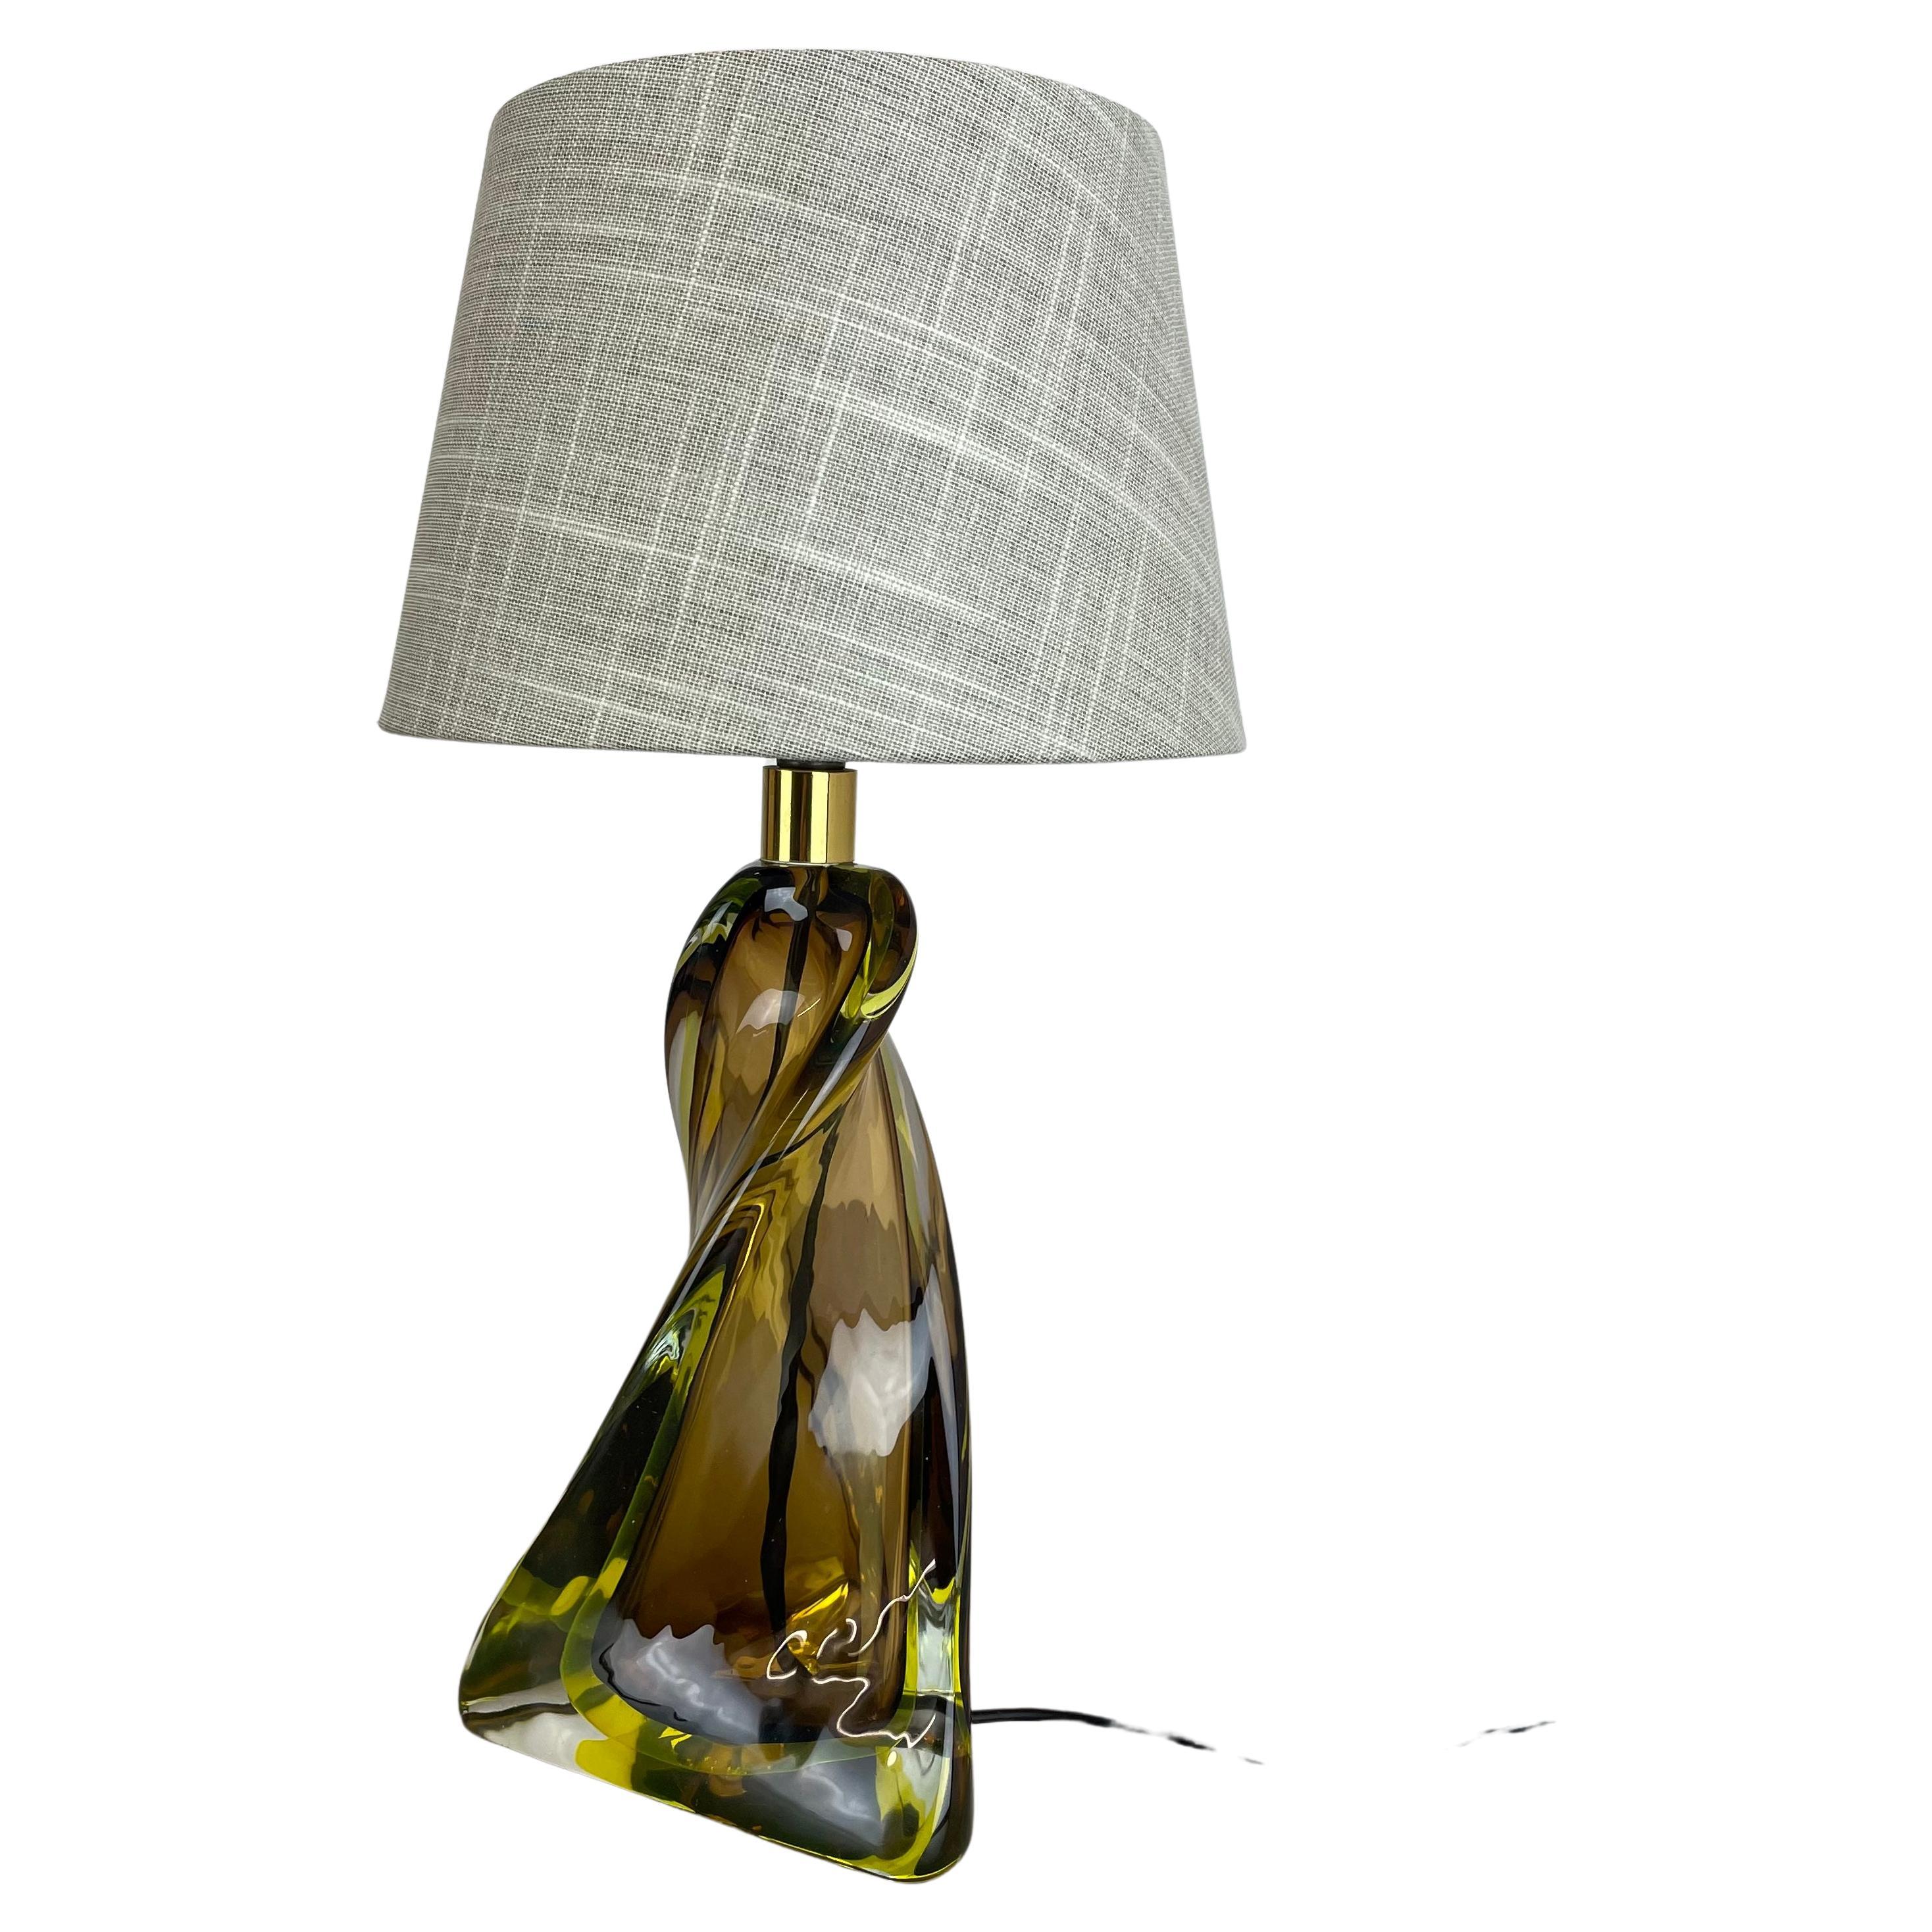 Article :

lampe de table lampe de bureau


Origine :

Murano, Italie


Âge :

1960s




Description :


Cette fantastique base de lampe de table vintage a été conçue et produite dans les années 1960 à Murano, en Italie. La base du luminaire est